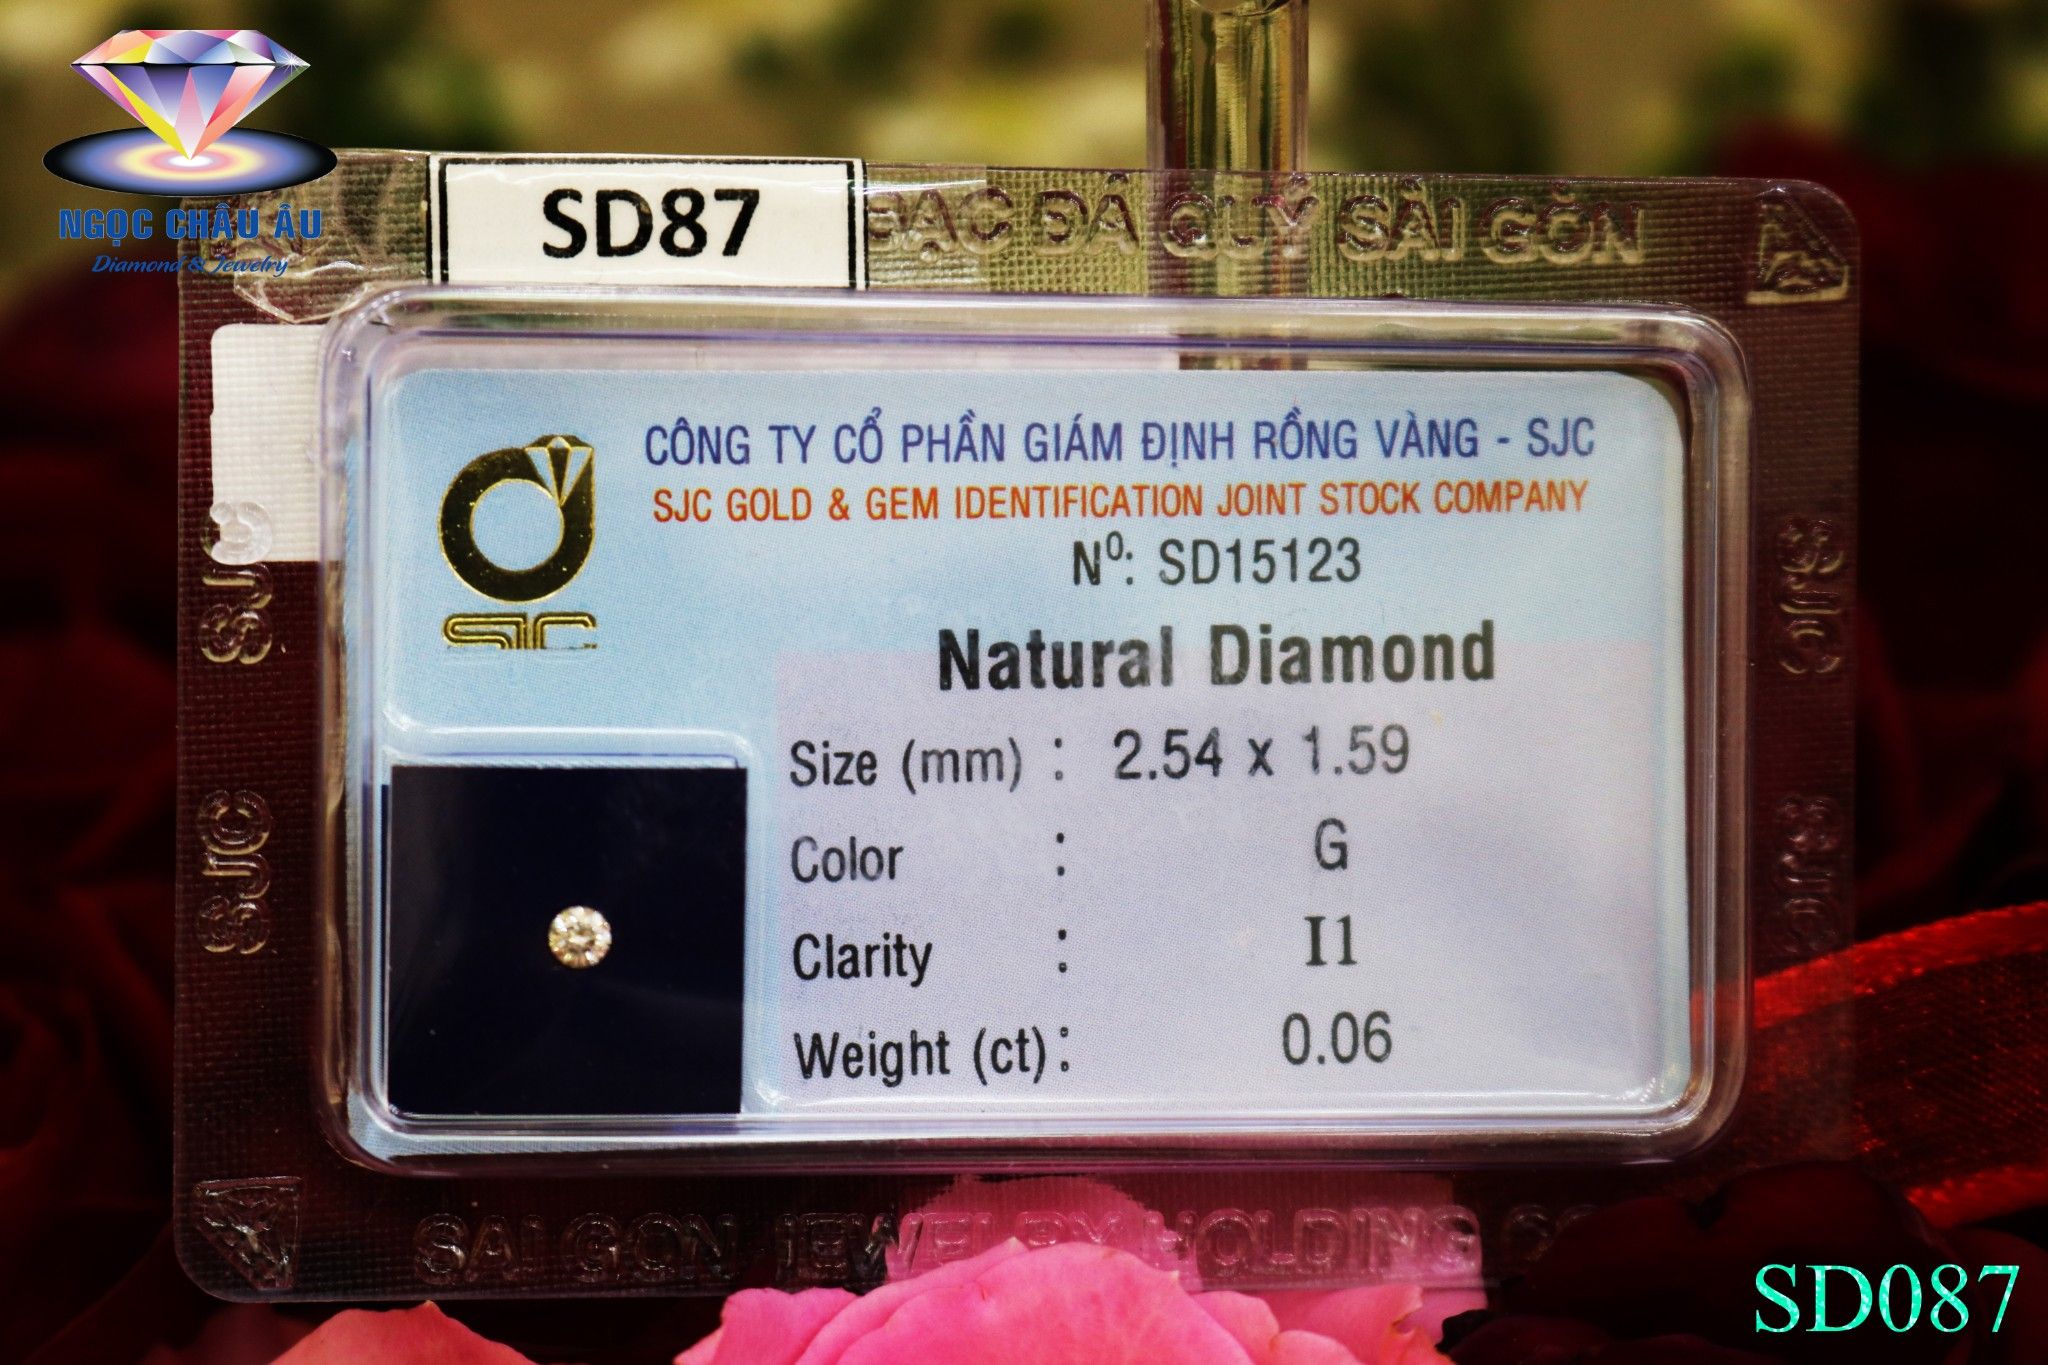  SD87-Kim Cương Thiên Nhiên 2.54x1.59mm; 0.06ct; G/I1 (SJC SD015123) 